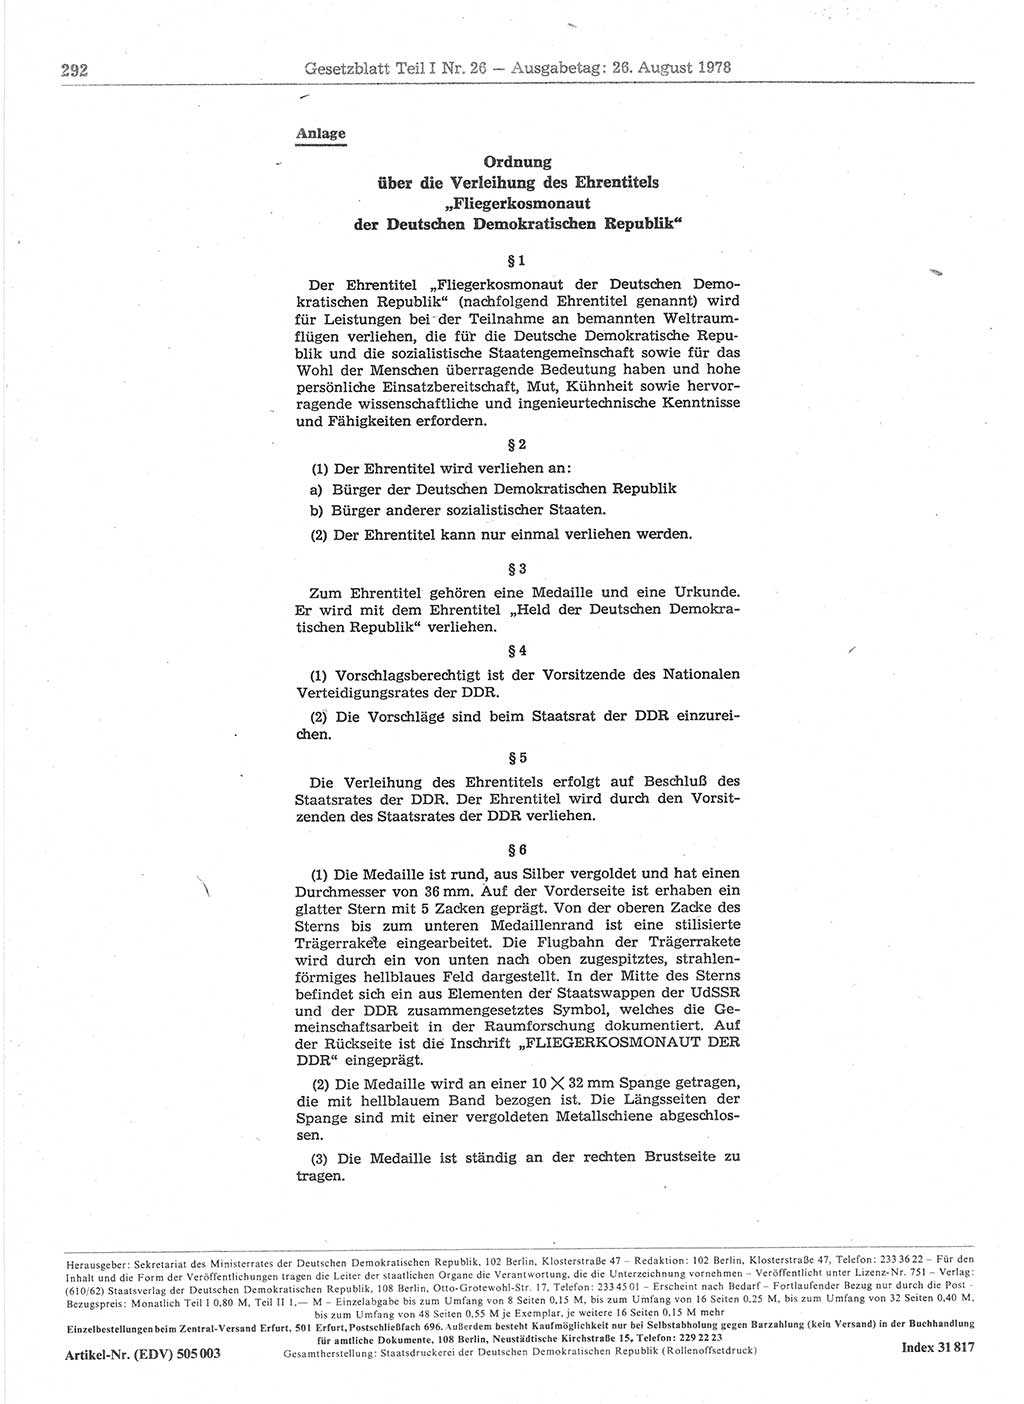 Gesetzblatt (GBl.) der Deutschen Demokratischen Republik (DDR) Teil Ⅰ 1978, Seite 292 (GBl. DDR Ⅰ 1978, S. 292)